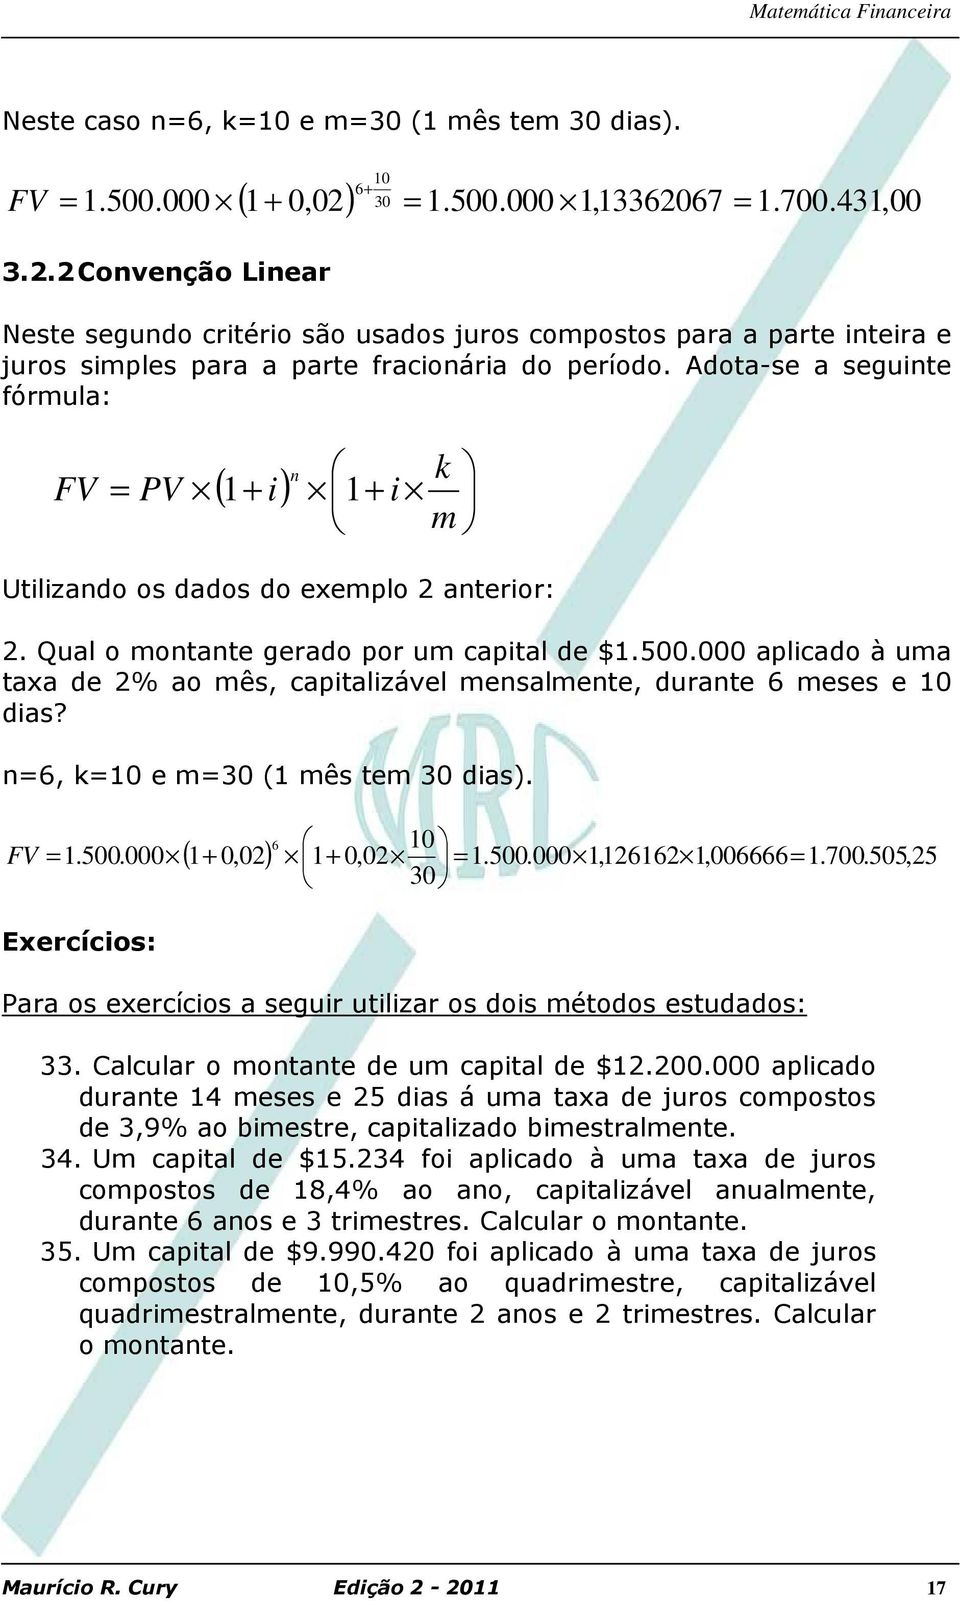 Adota-se a seguite fórmula: i) 1+ i k m Utilizado os dados do exemplo 2 aterior: 2. Qual o motate gerado por um capital de $1.500.